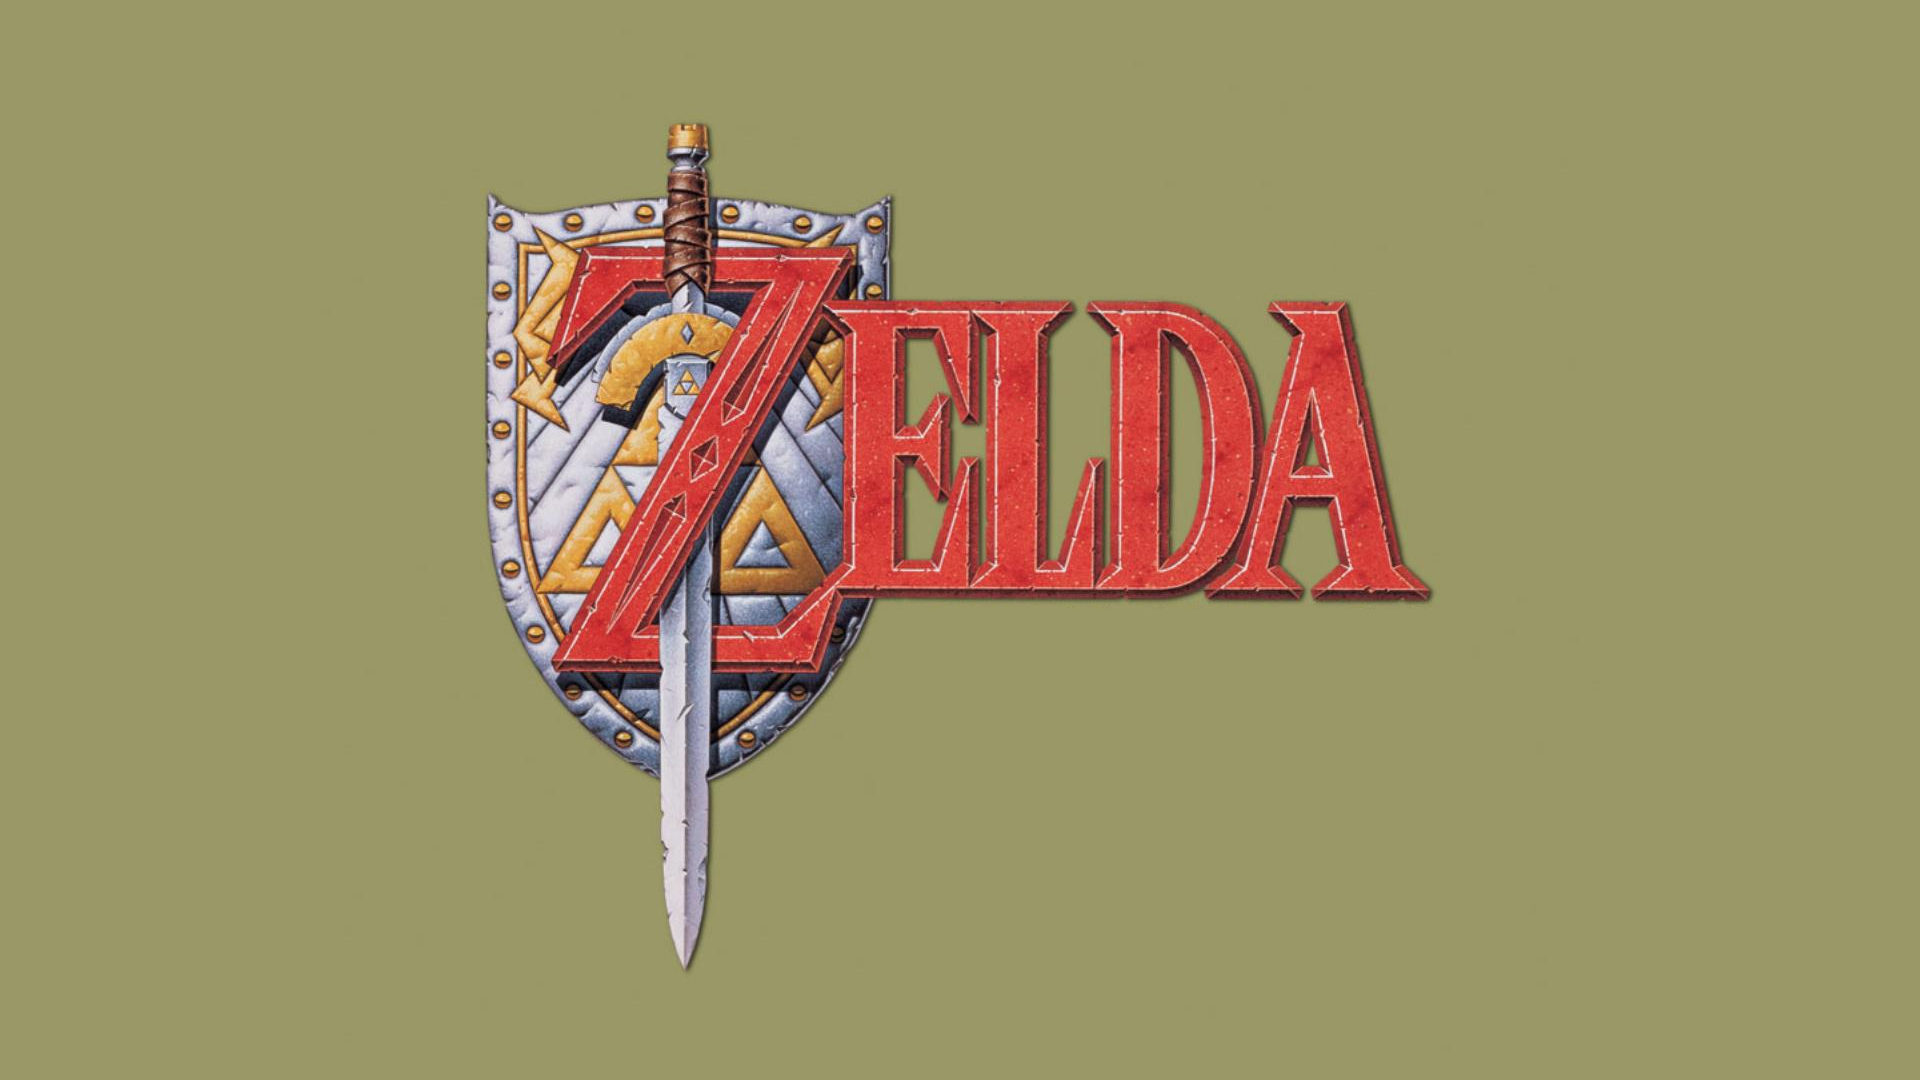 Zelda Master Sword The Legend Of Zelda Video Games 1920x1080